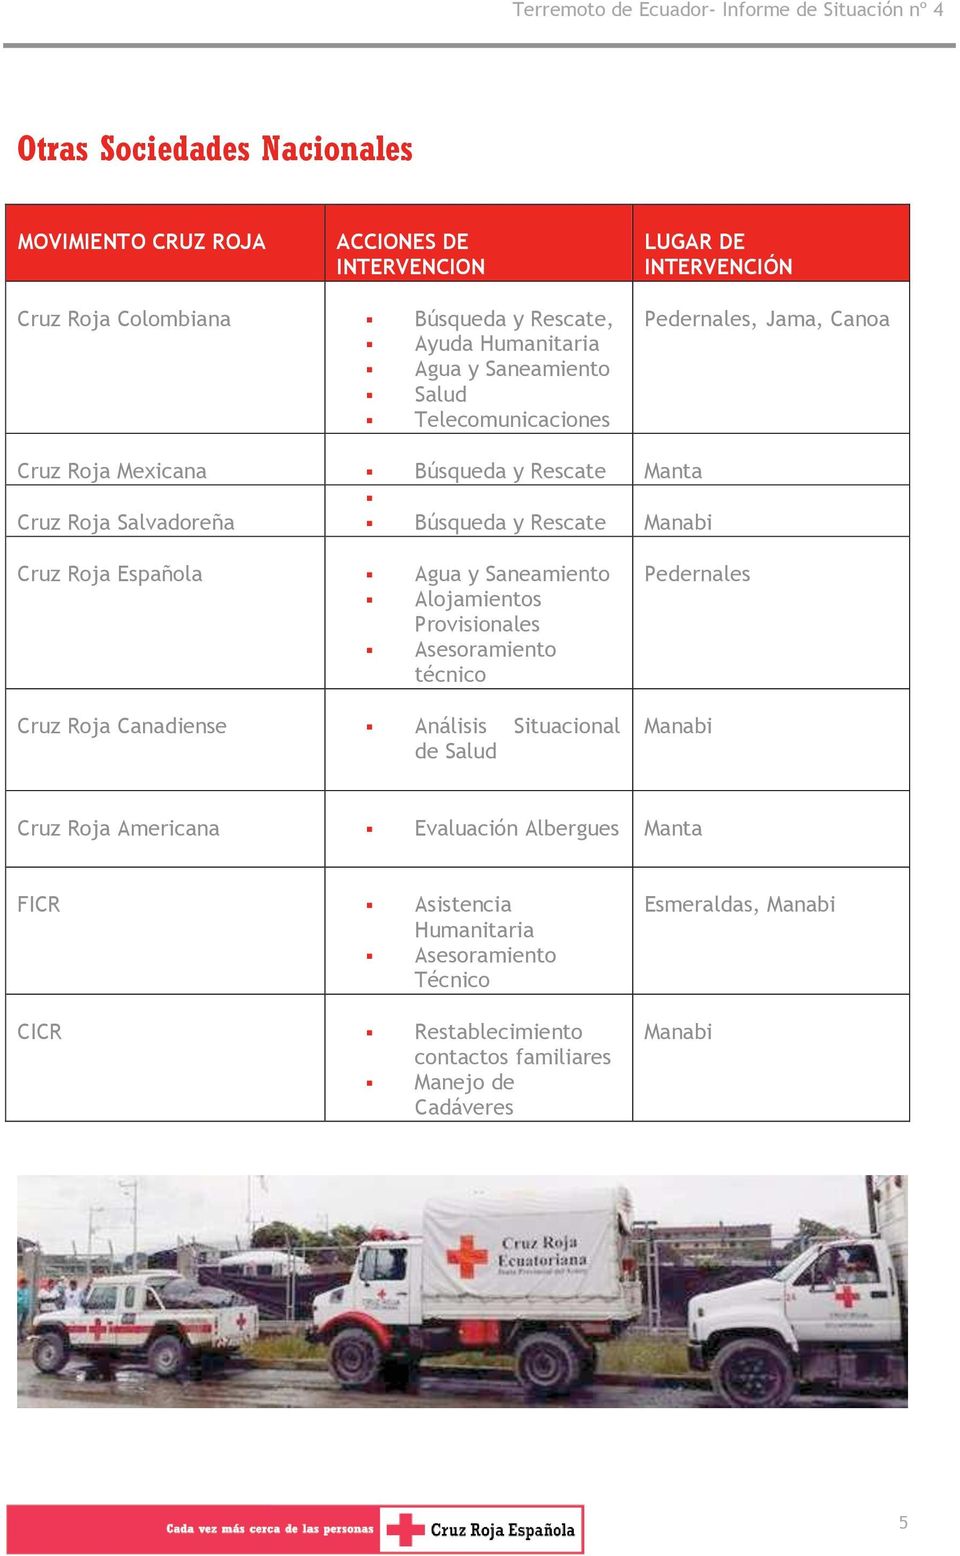 Española Agua y Saneamiento Alojamientos Provisionales Asesoramiento técnico Cruz Roja Canadiense Análisis Situacional de Salud Pedernales Manabi Cruz Roja